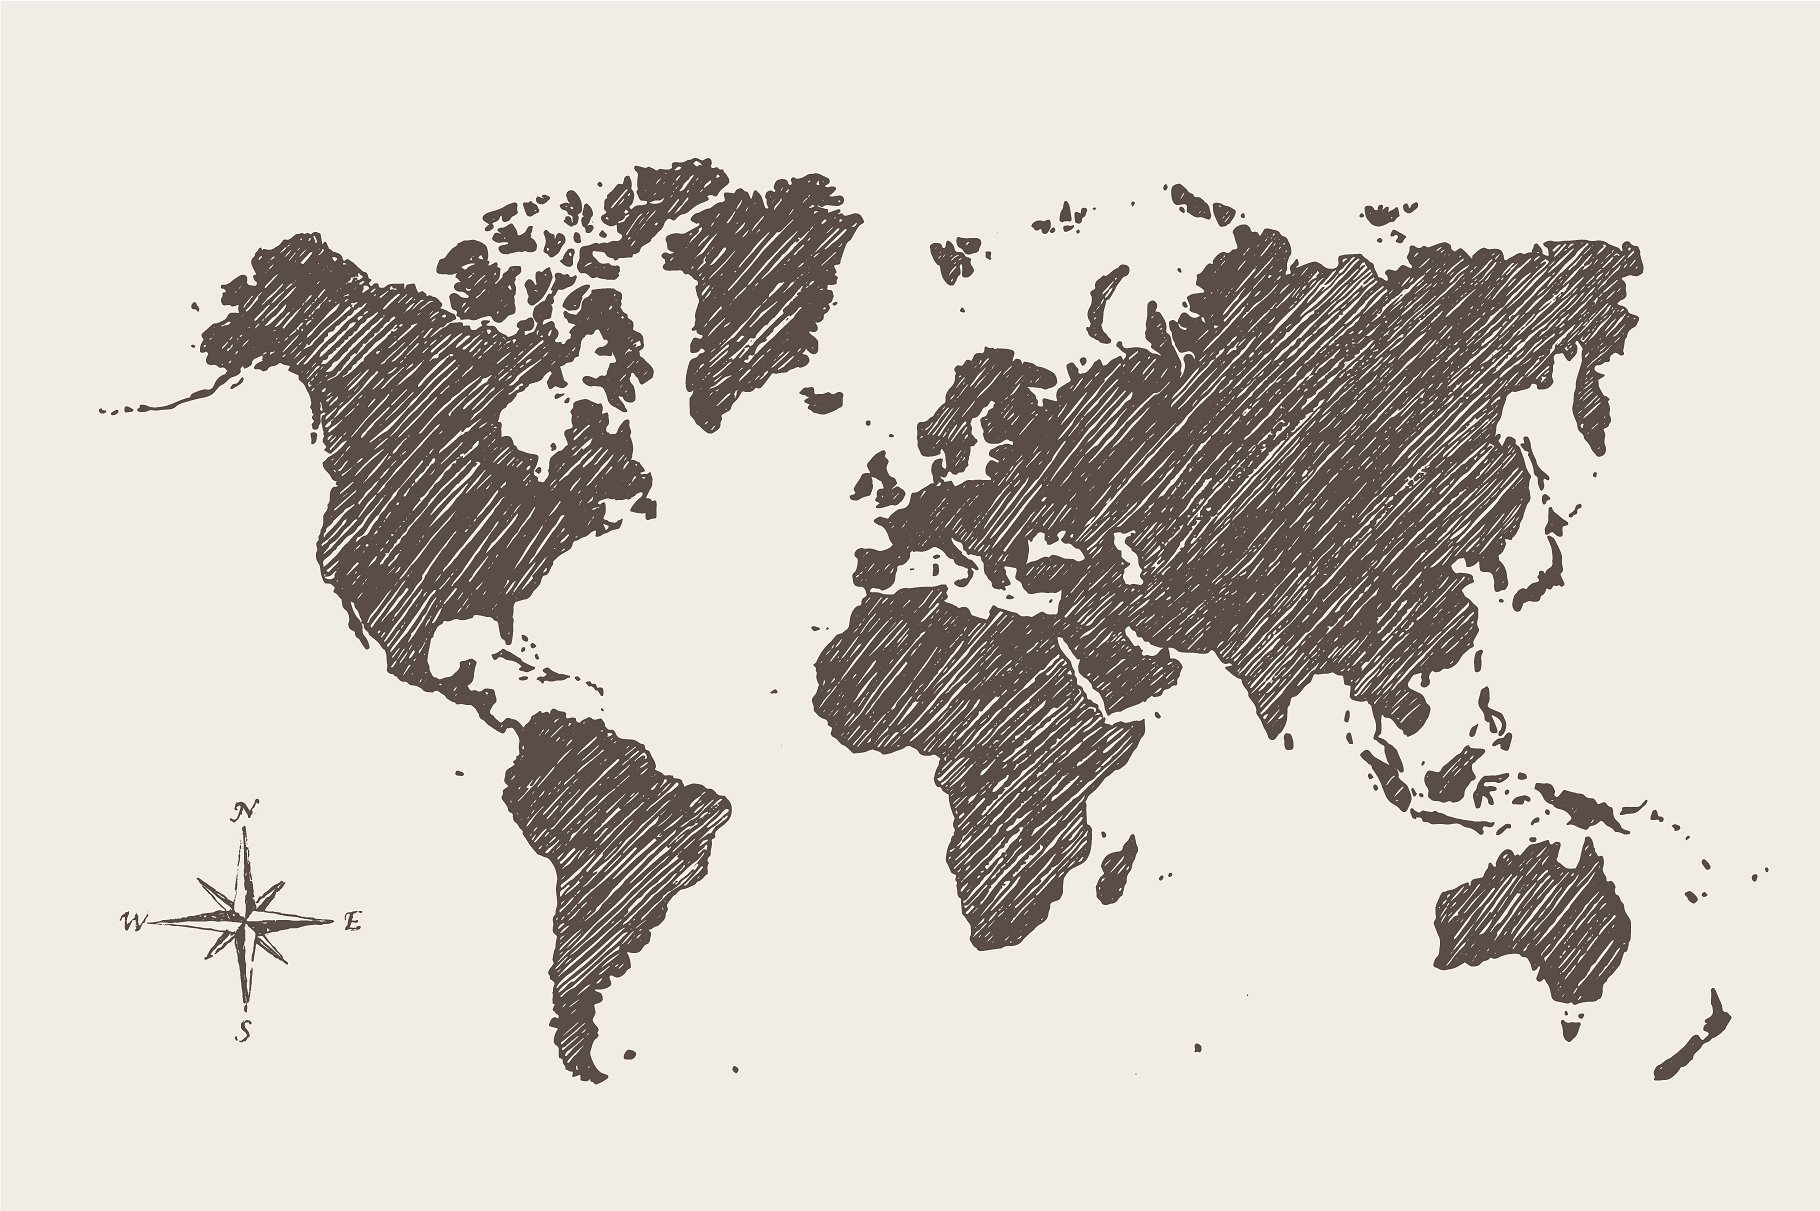 复古手绘世界地图设计素材Map of the world a